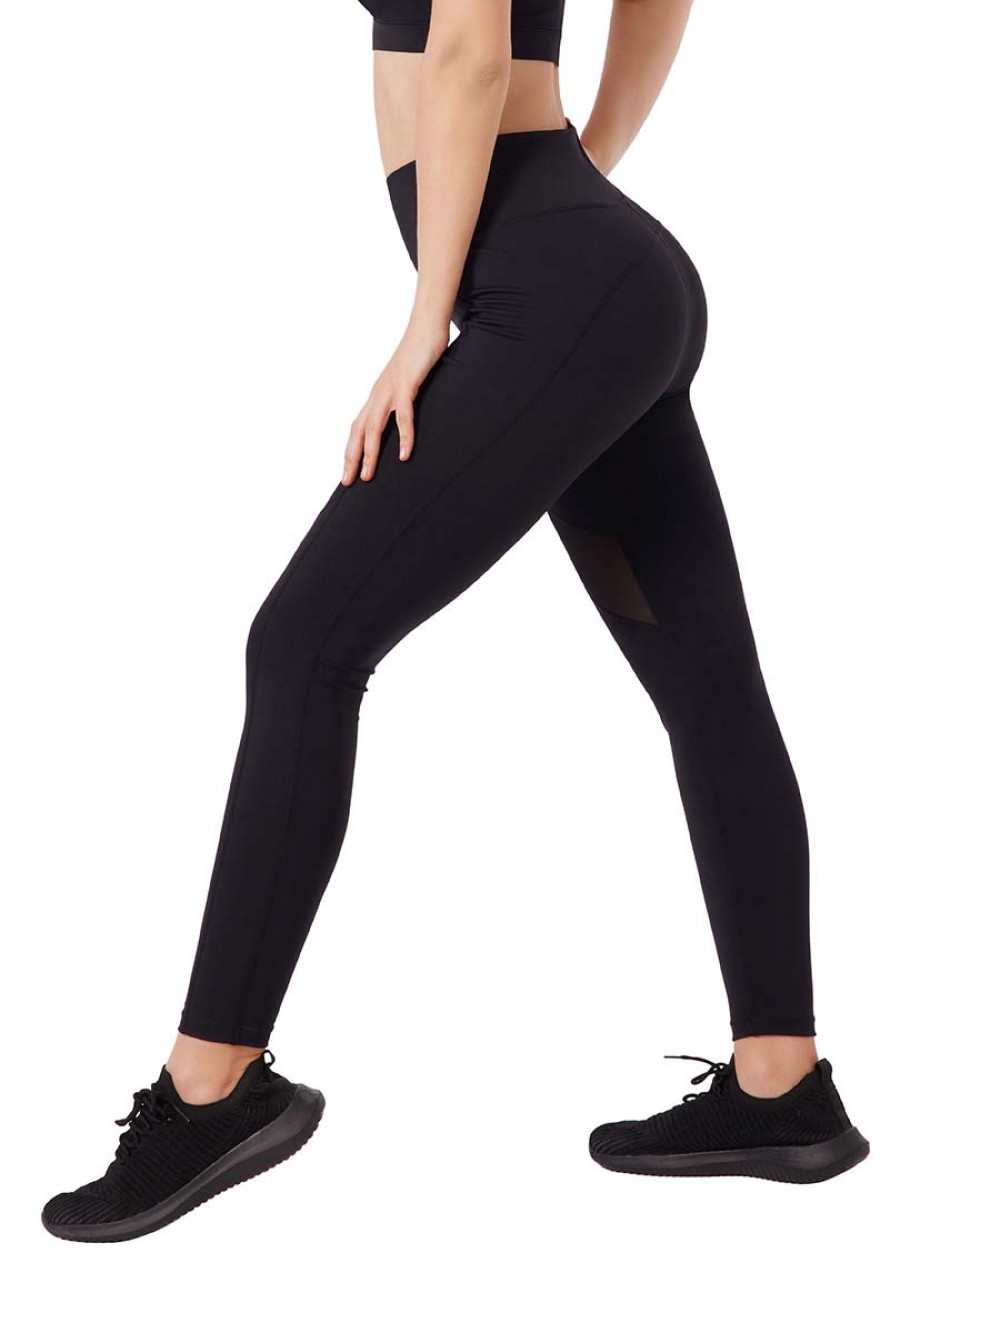 New Design High Waist Leggings Fitness Women Seamless Yoga Leggings